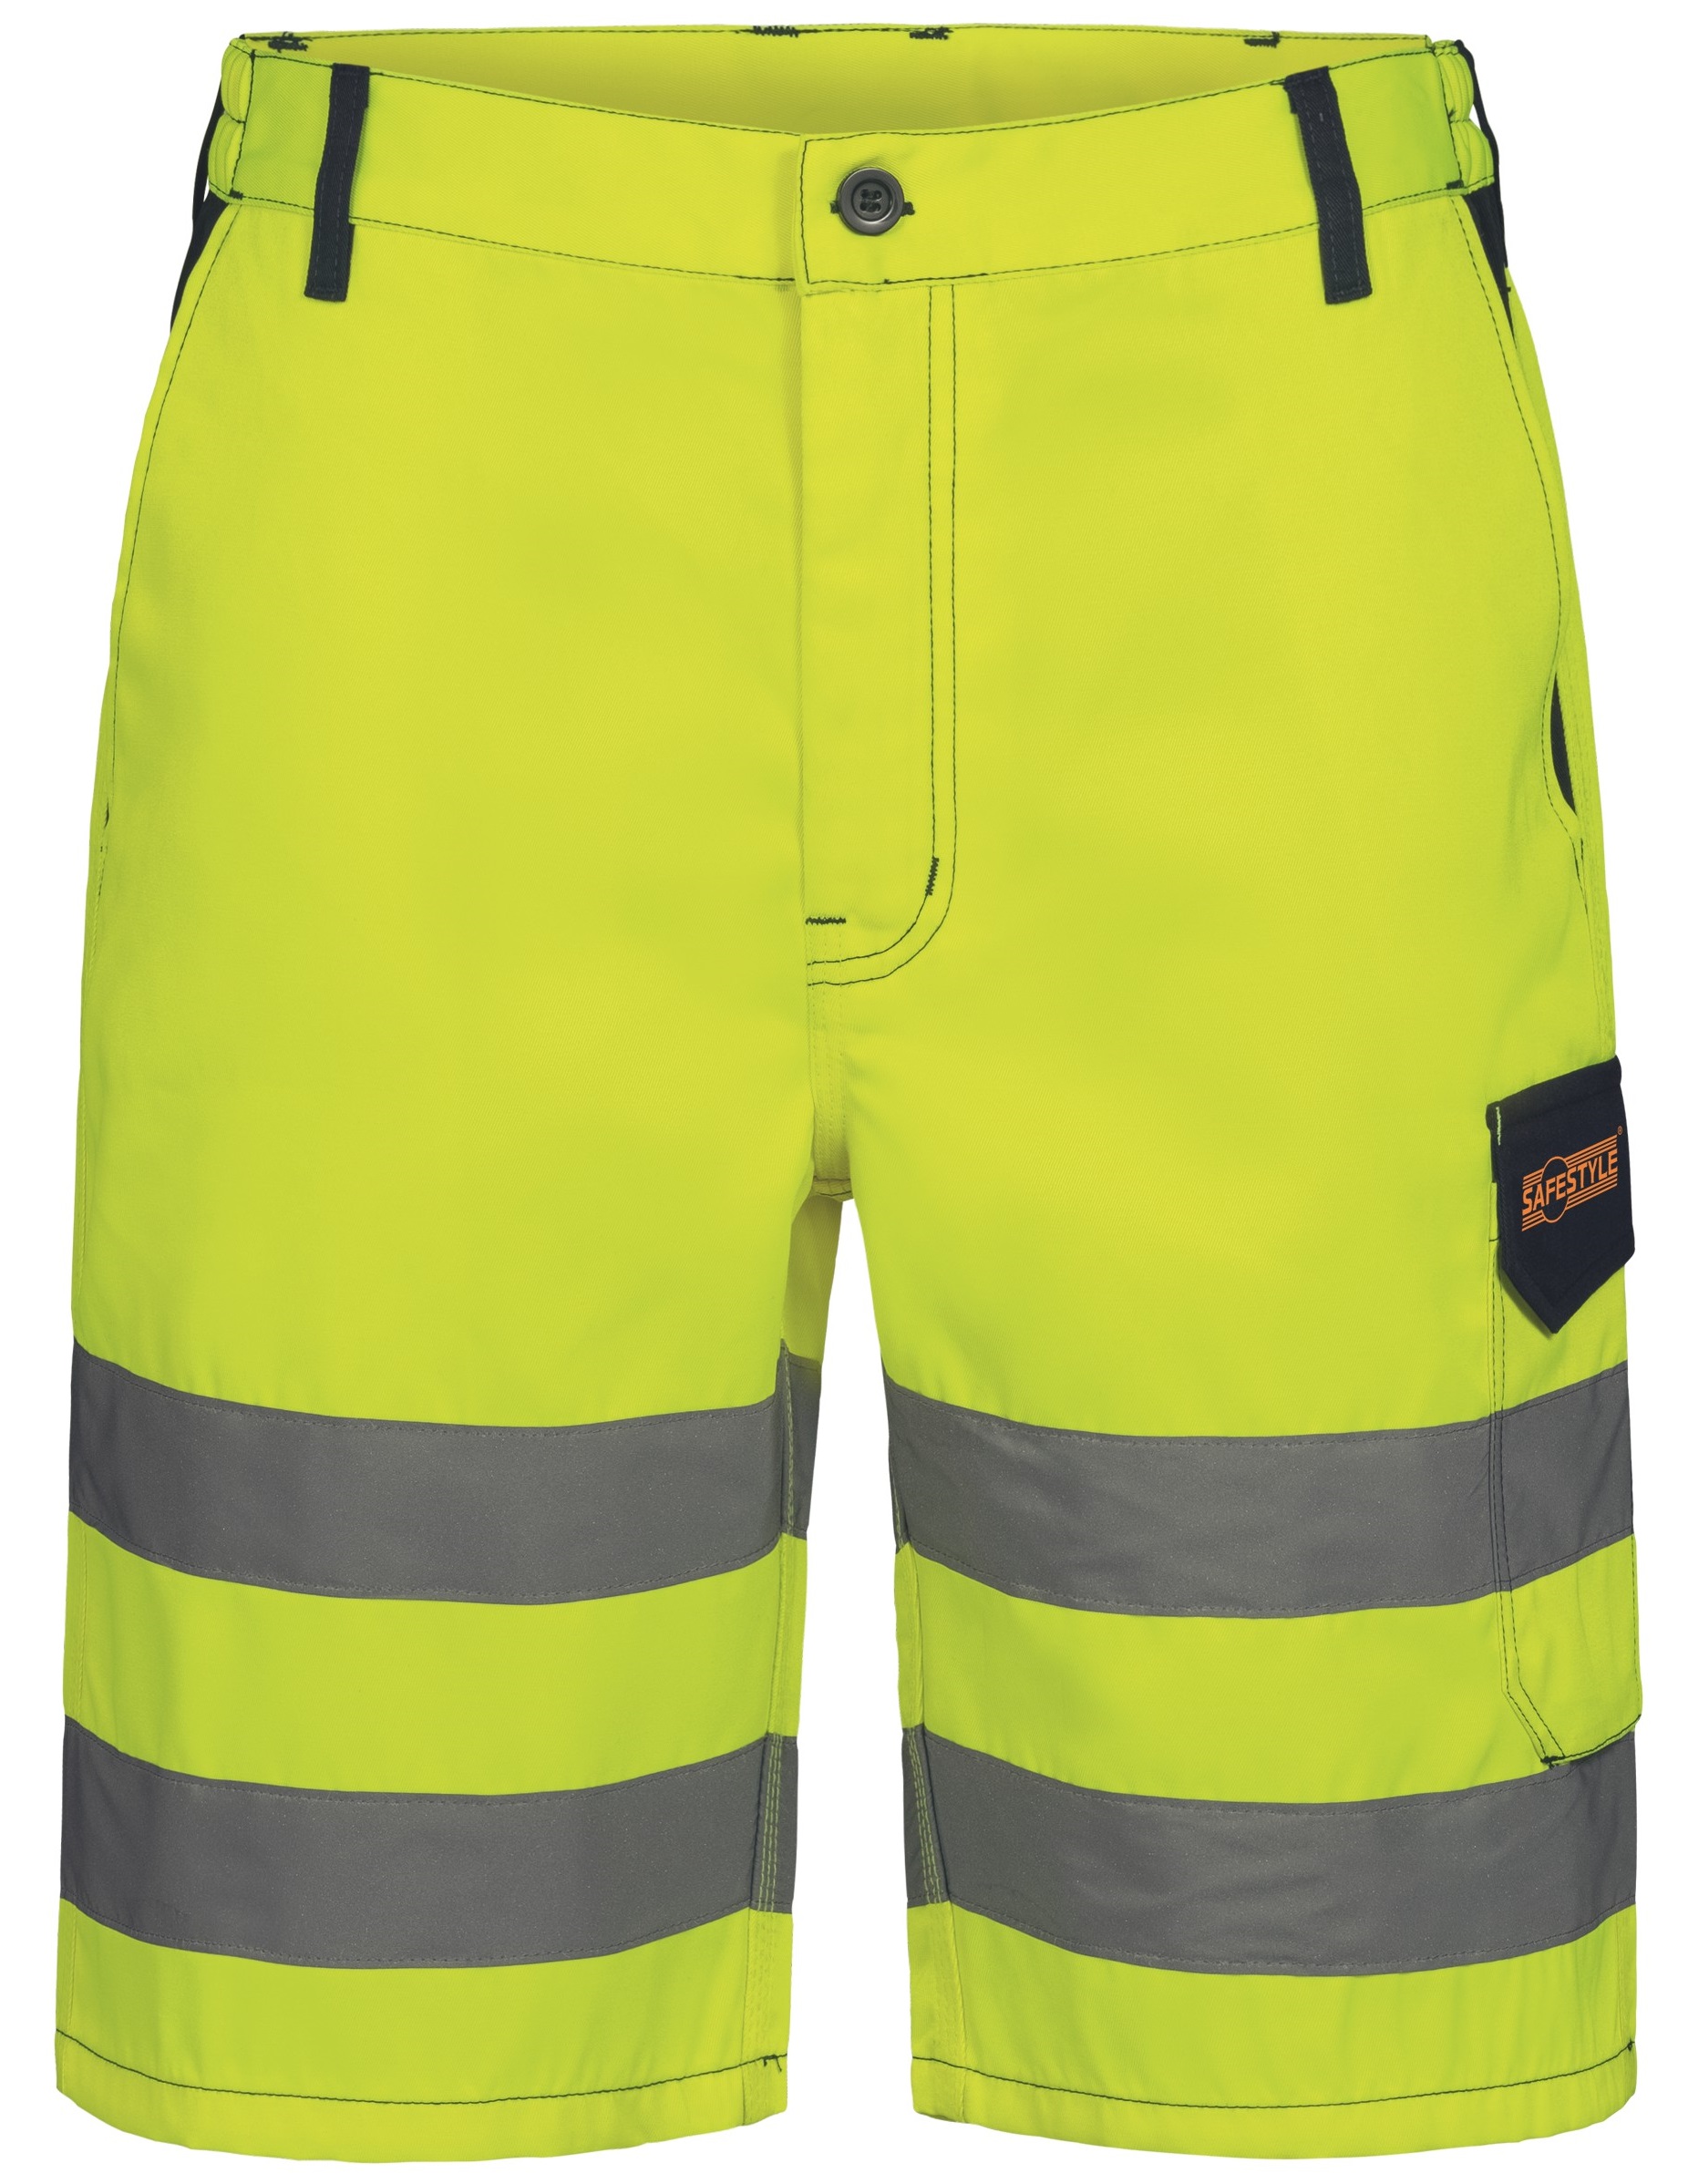 F-Warnschutz-Shorts, *JESSEN*, gelb/marine